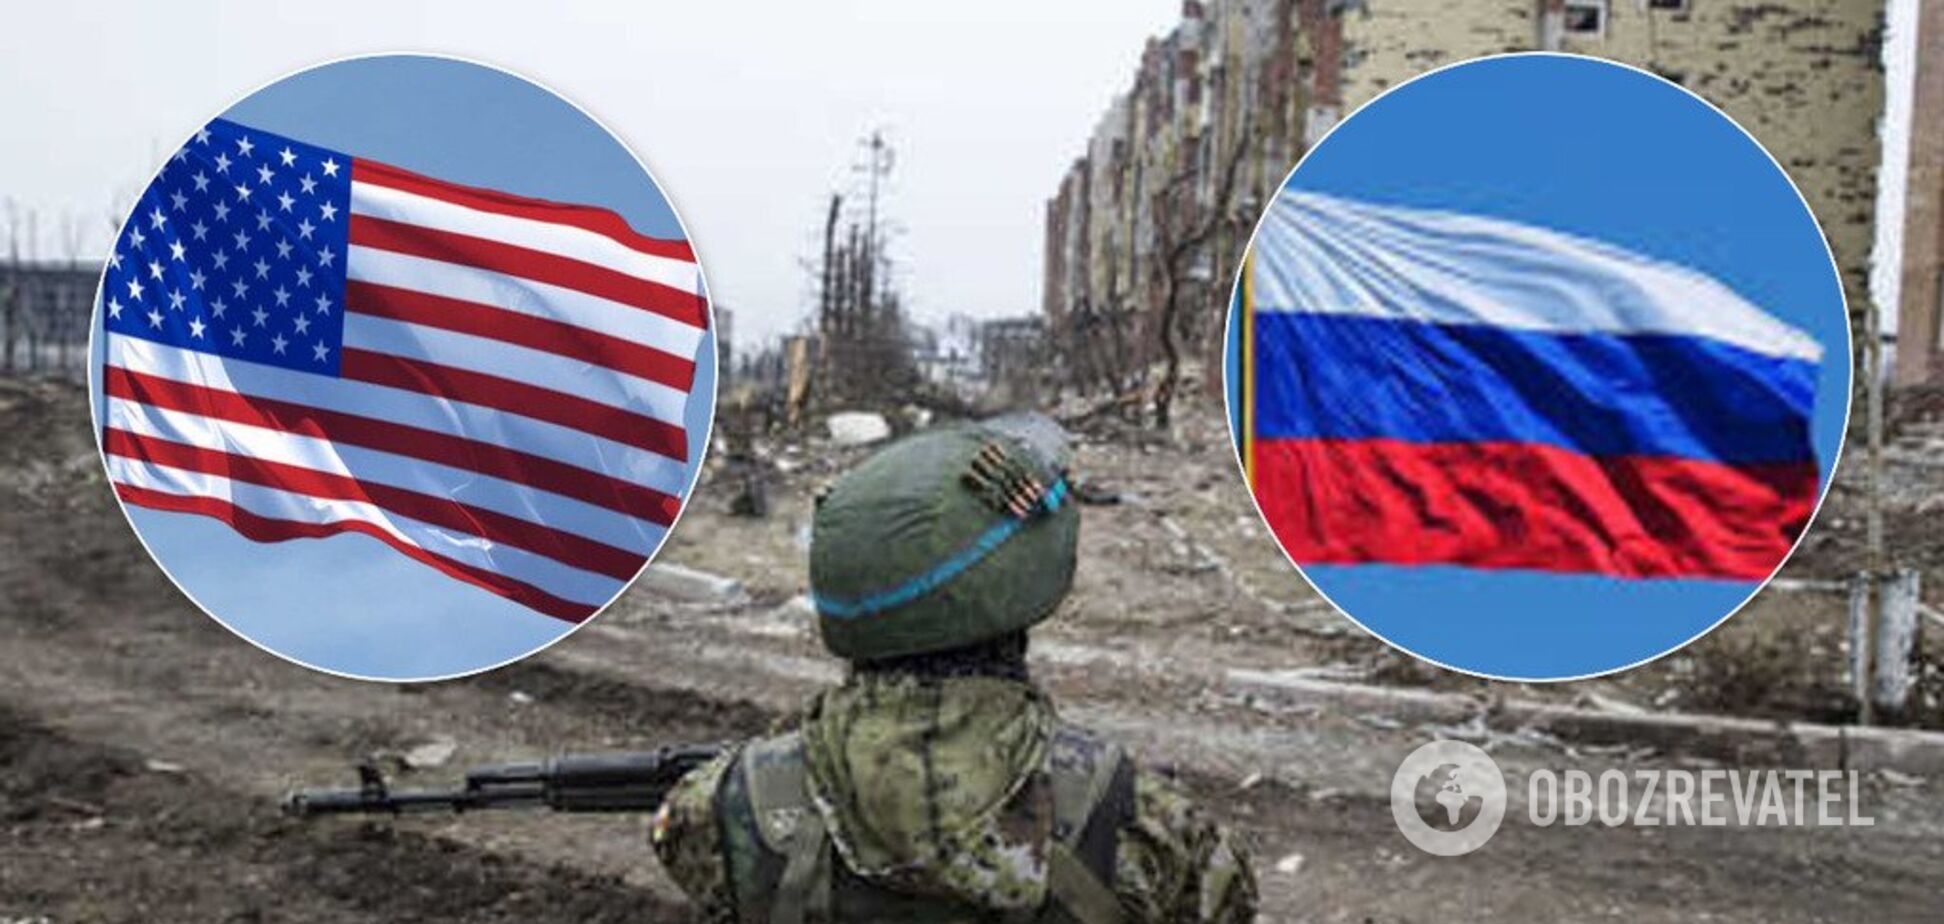 'Ми на боці України': США висунули Росії жорстку умову через Донбас